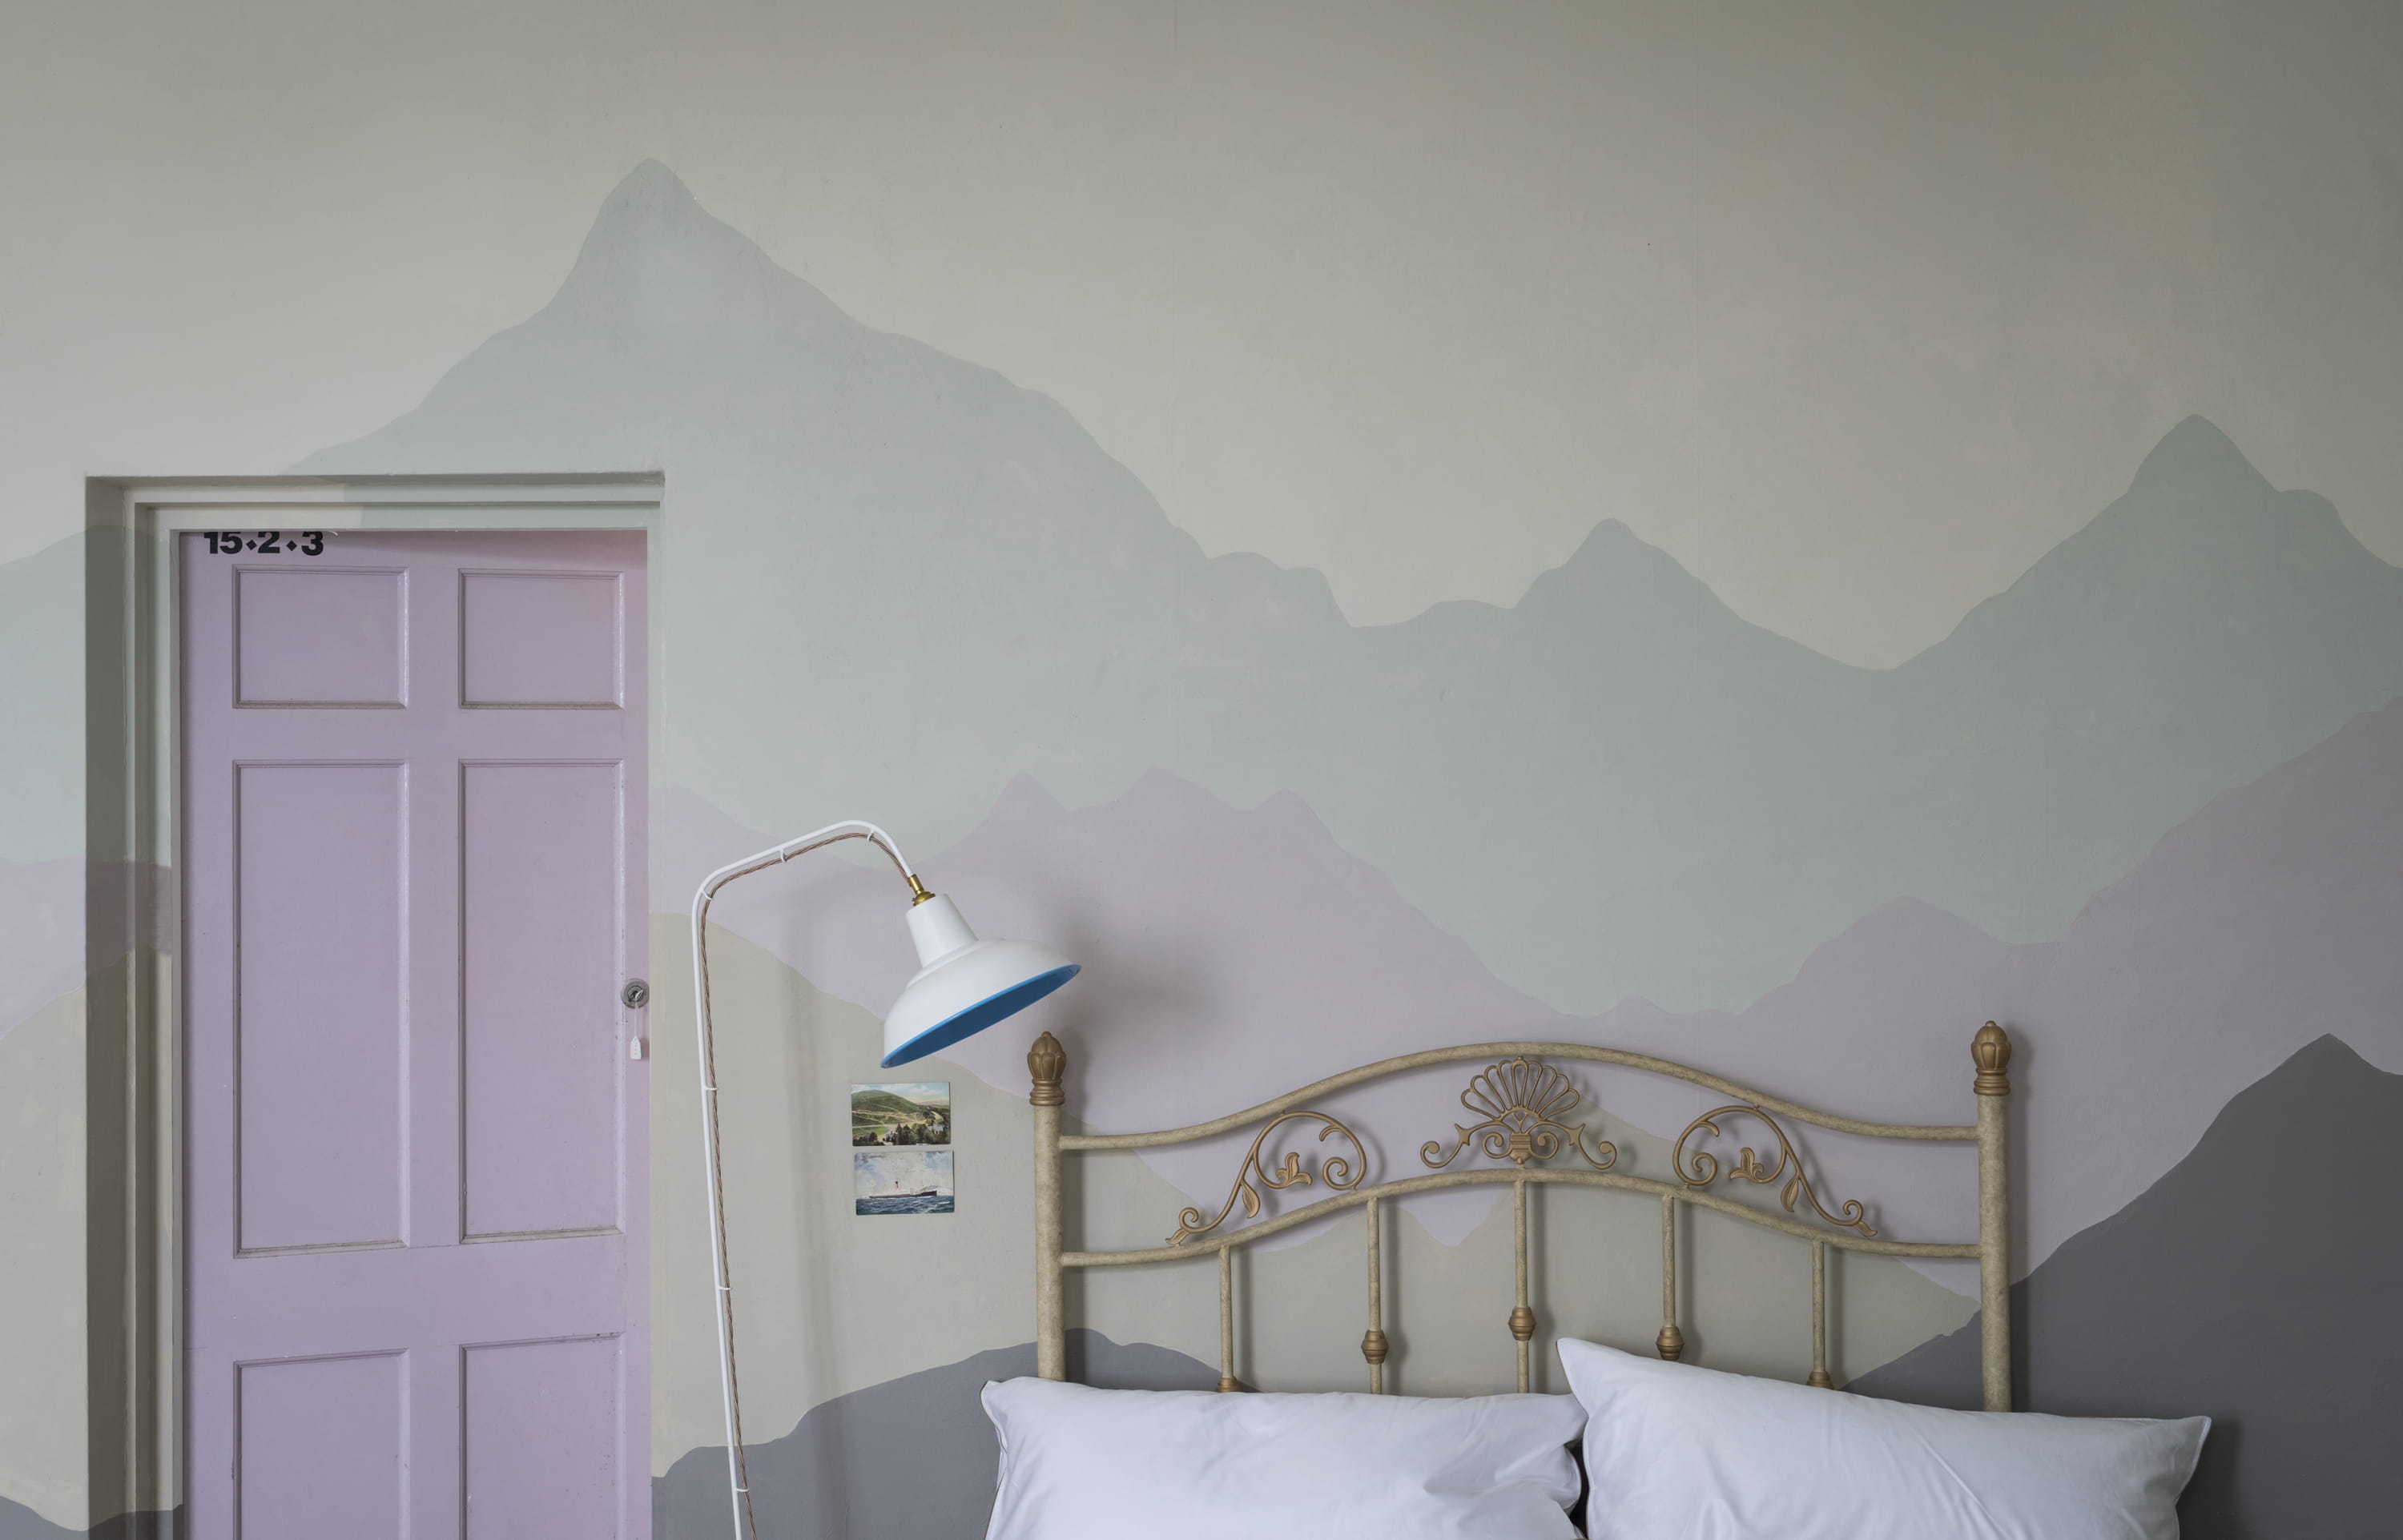 Краска для покраски стен в квартире какая лучше: Как выбрать краску для стен в квартире: какая будет лучше держаться